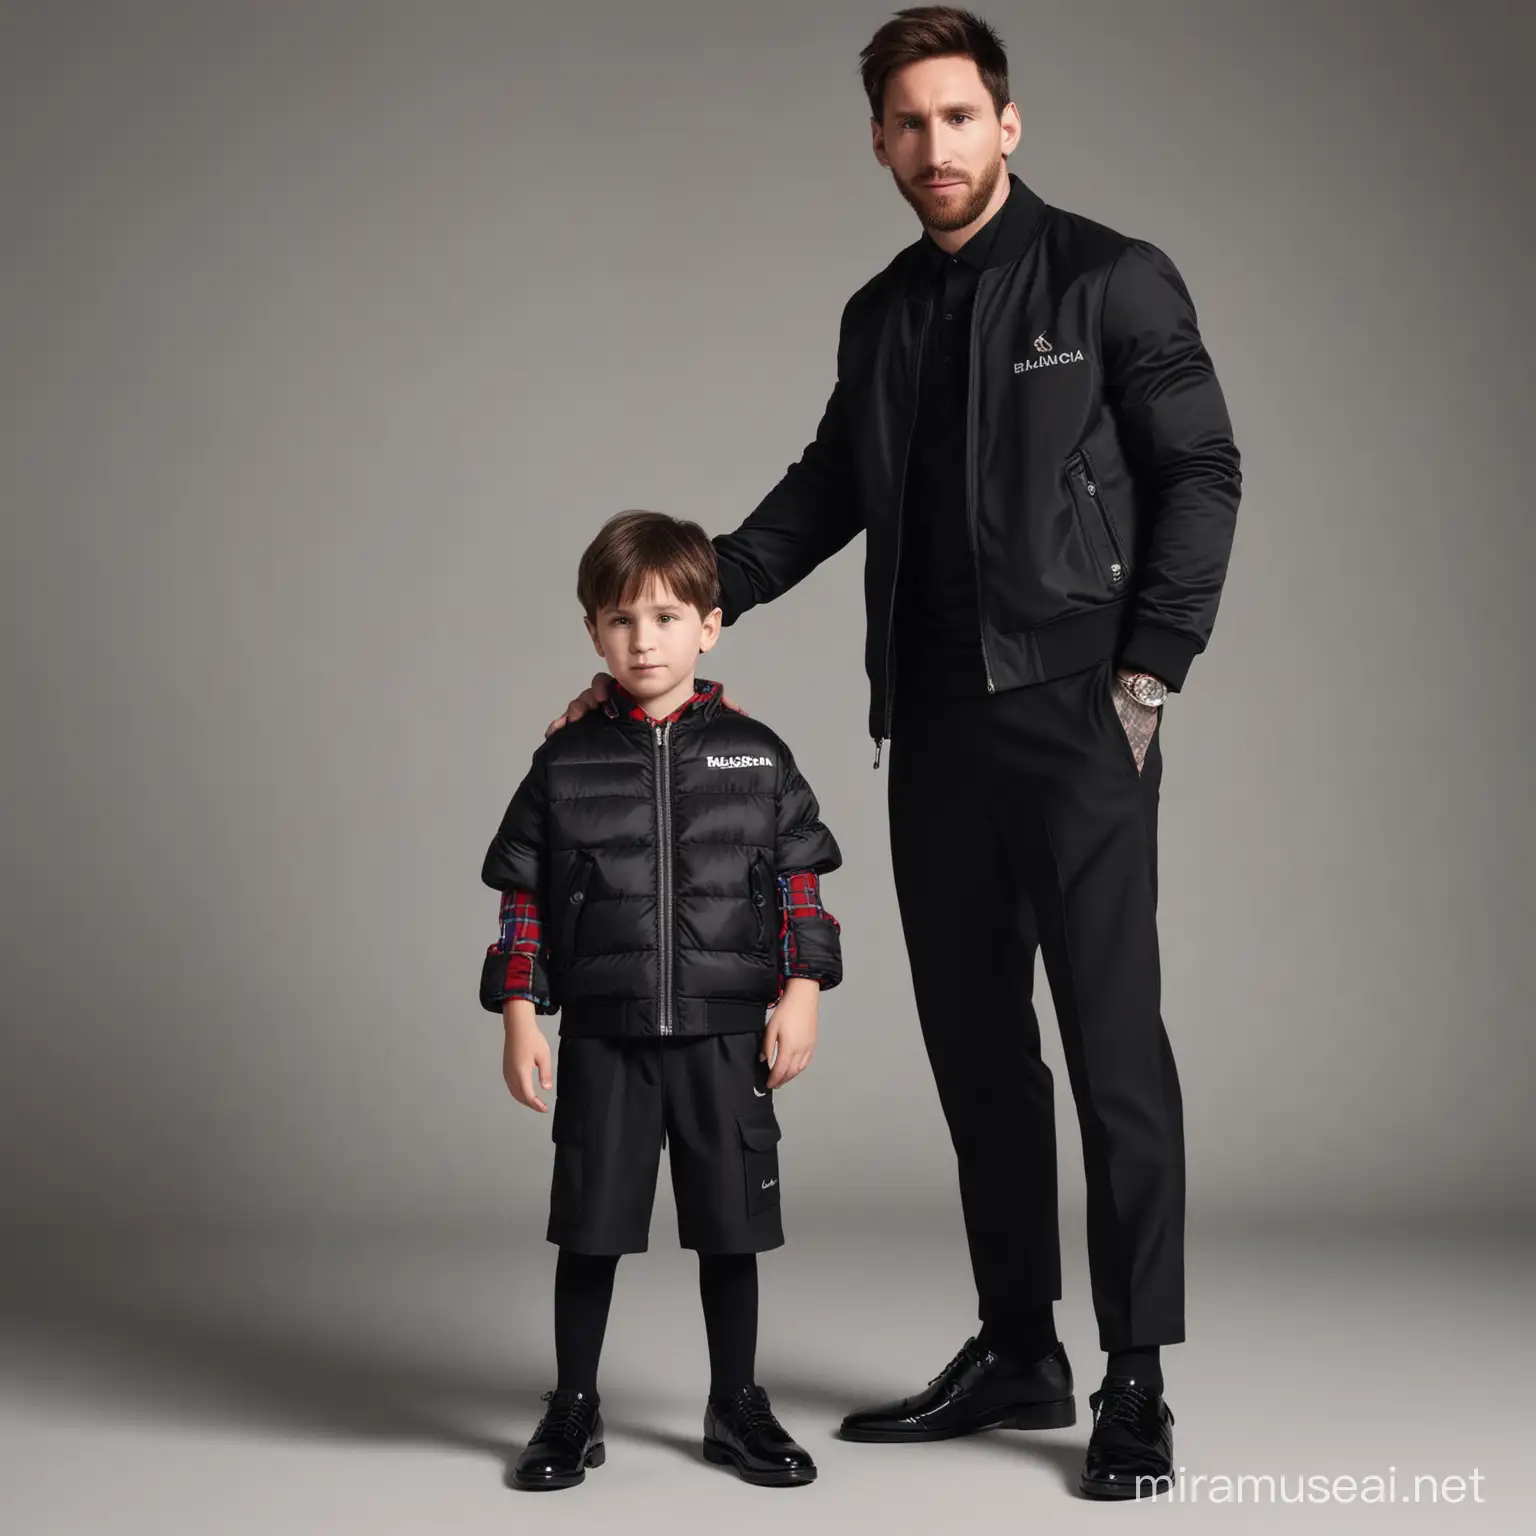 Lionel Messi and Son Balenciaga Fashion Bond